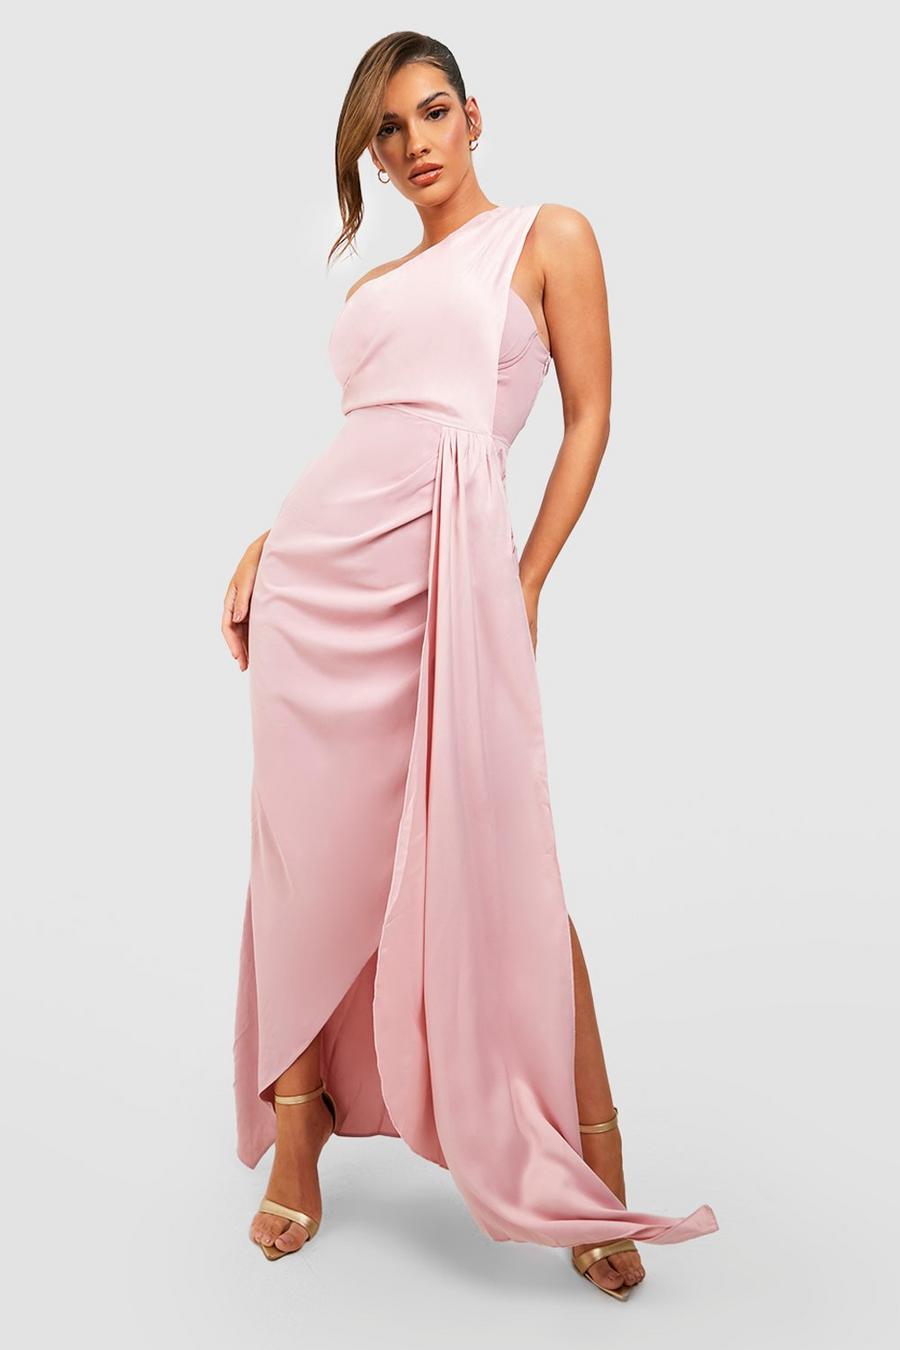 Blush rose Satin Drape One Shoulder Maxi Dress